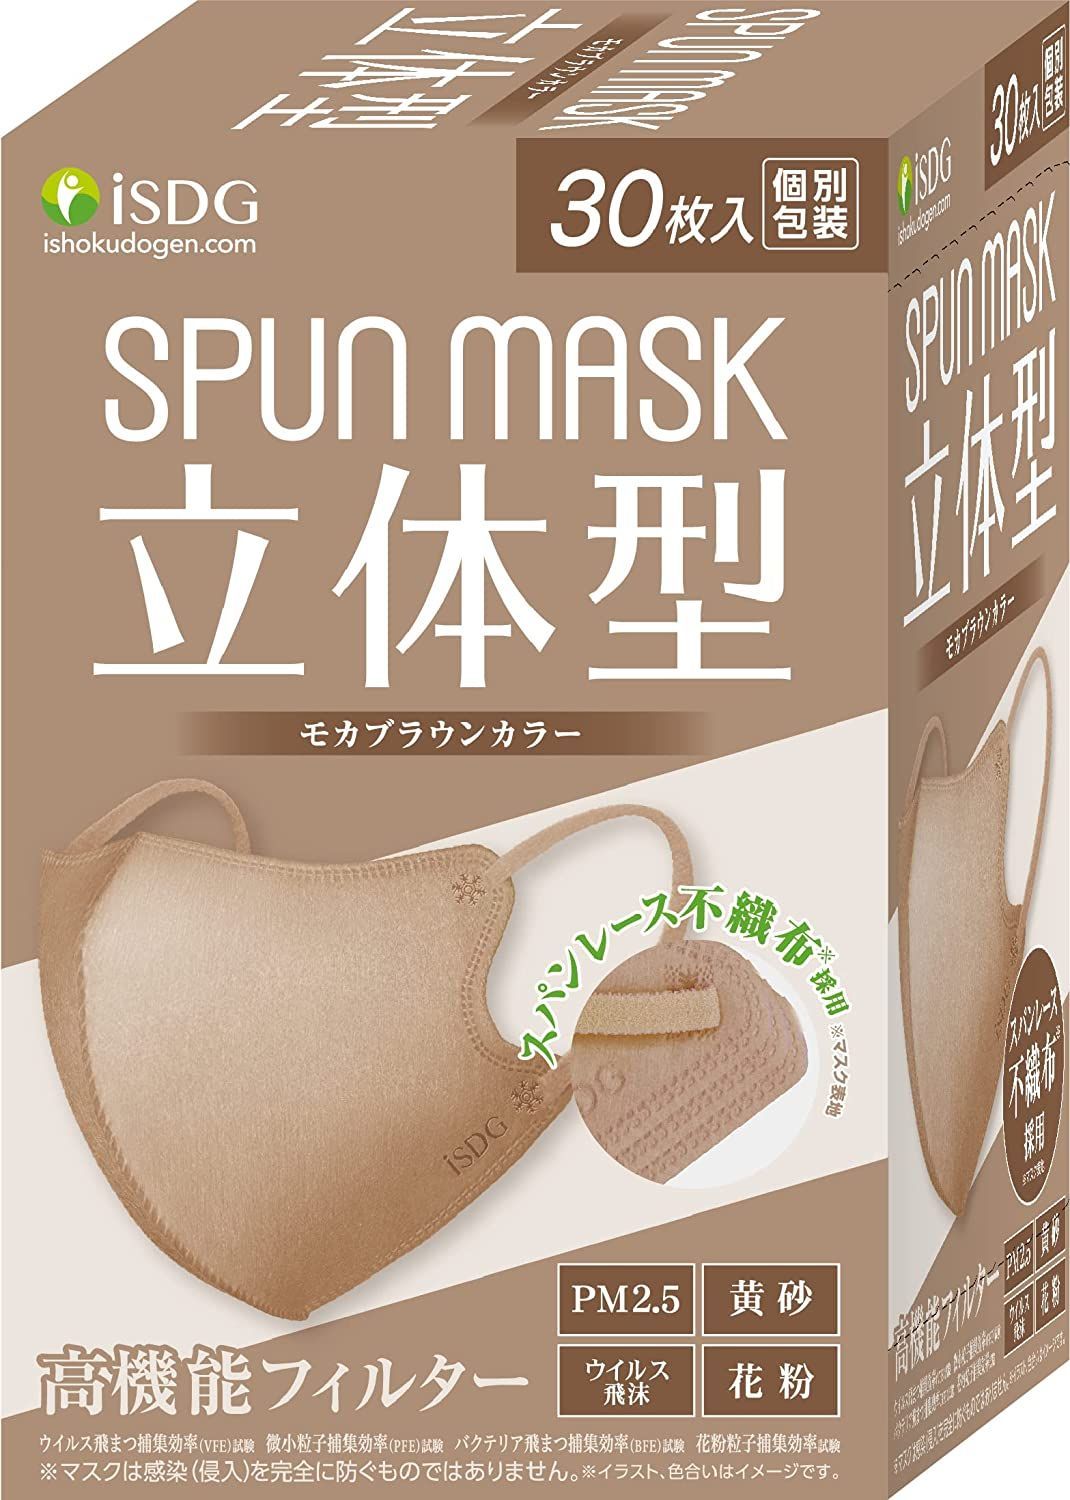 商品 SPUN MASK スパンレース 立体型 ブラック 不織布マスク 1箱 30枚入 医食同源ドットコム 使い捨て カラーマスク 